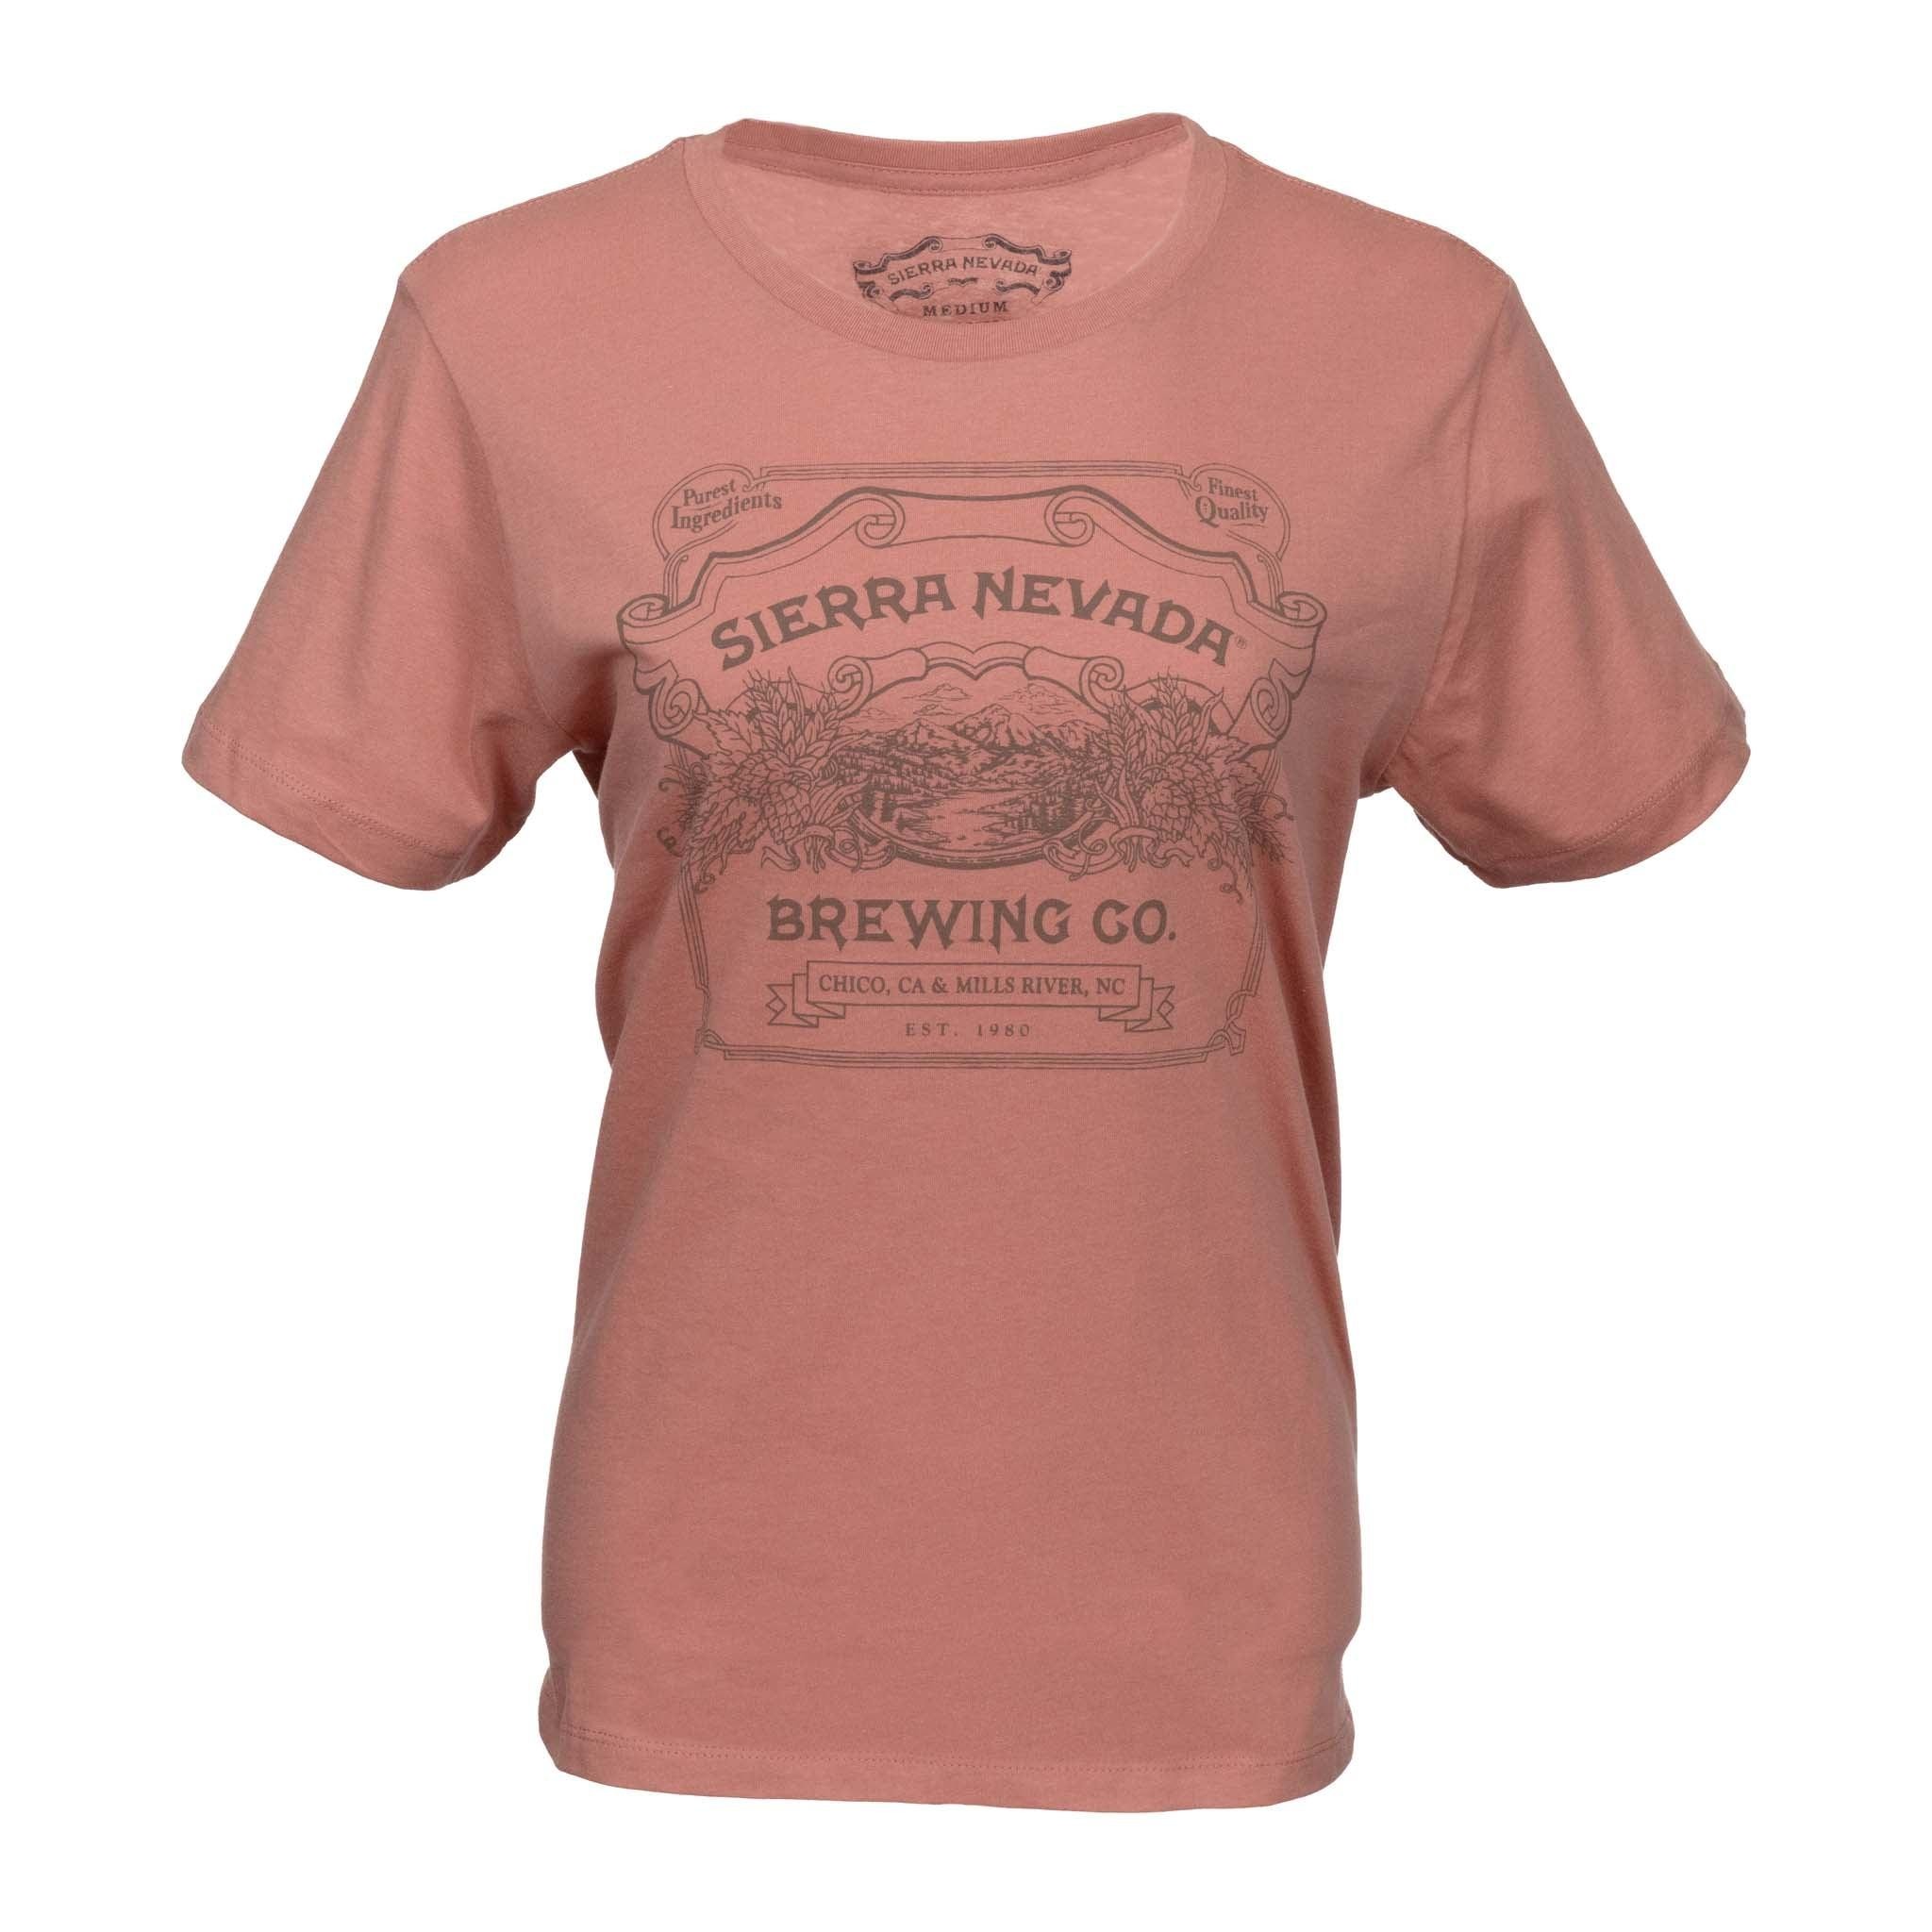 Handcrafted Short Sleeve T-Shirt Desert Pink Women's - L